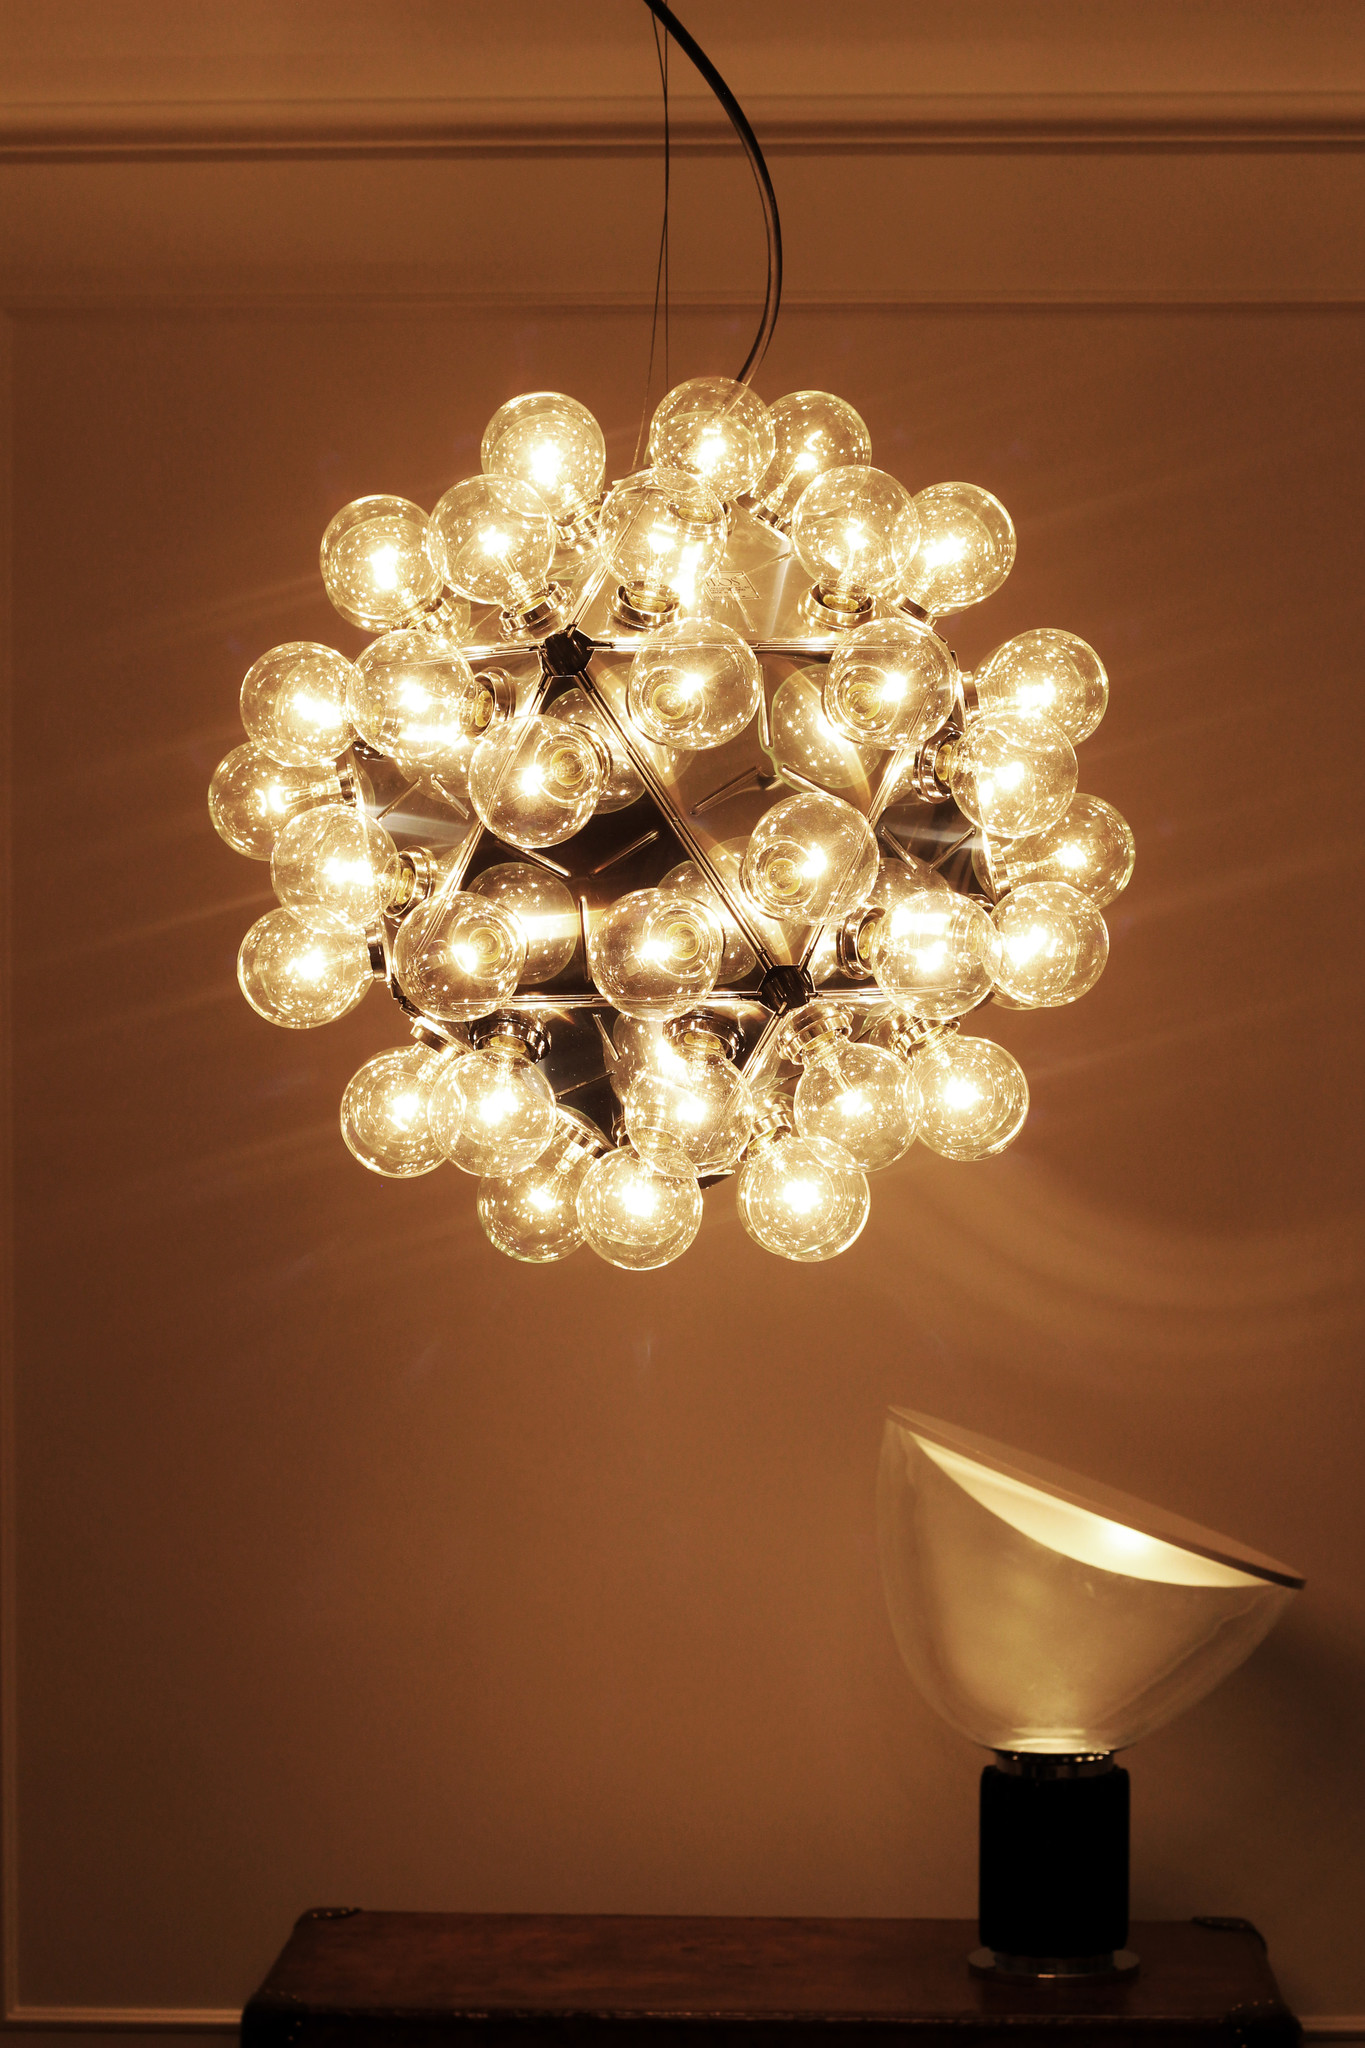 Flos Taraxacum 88 lamp designed by Achille Castiglioni